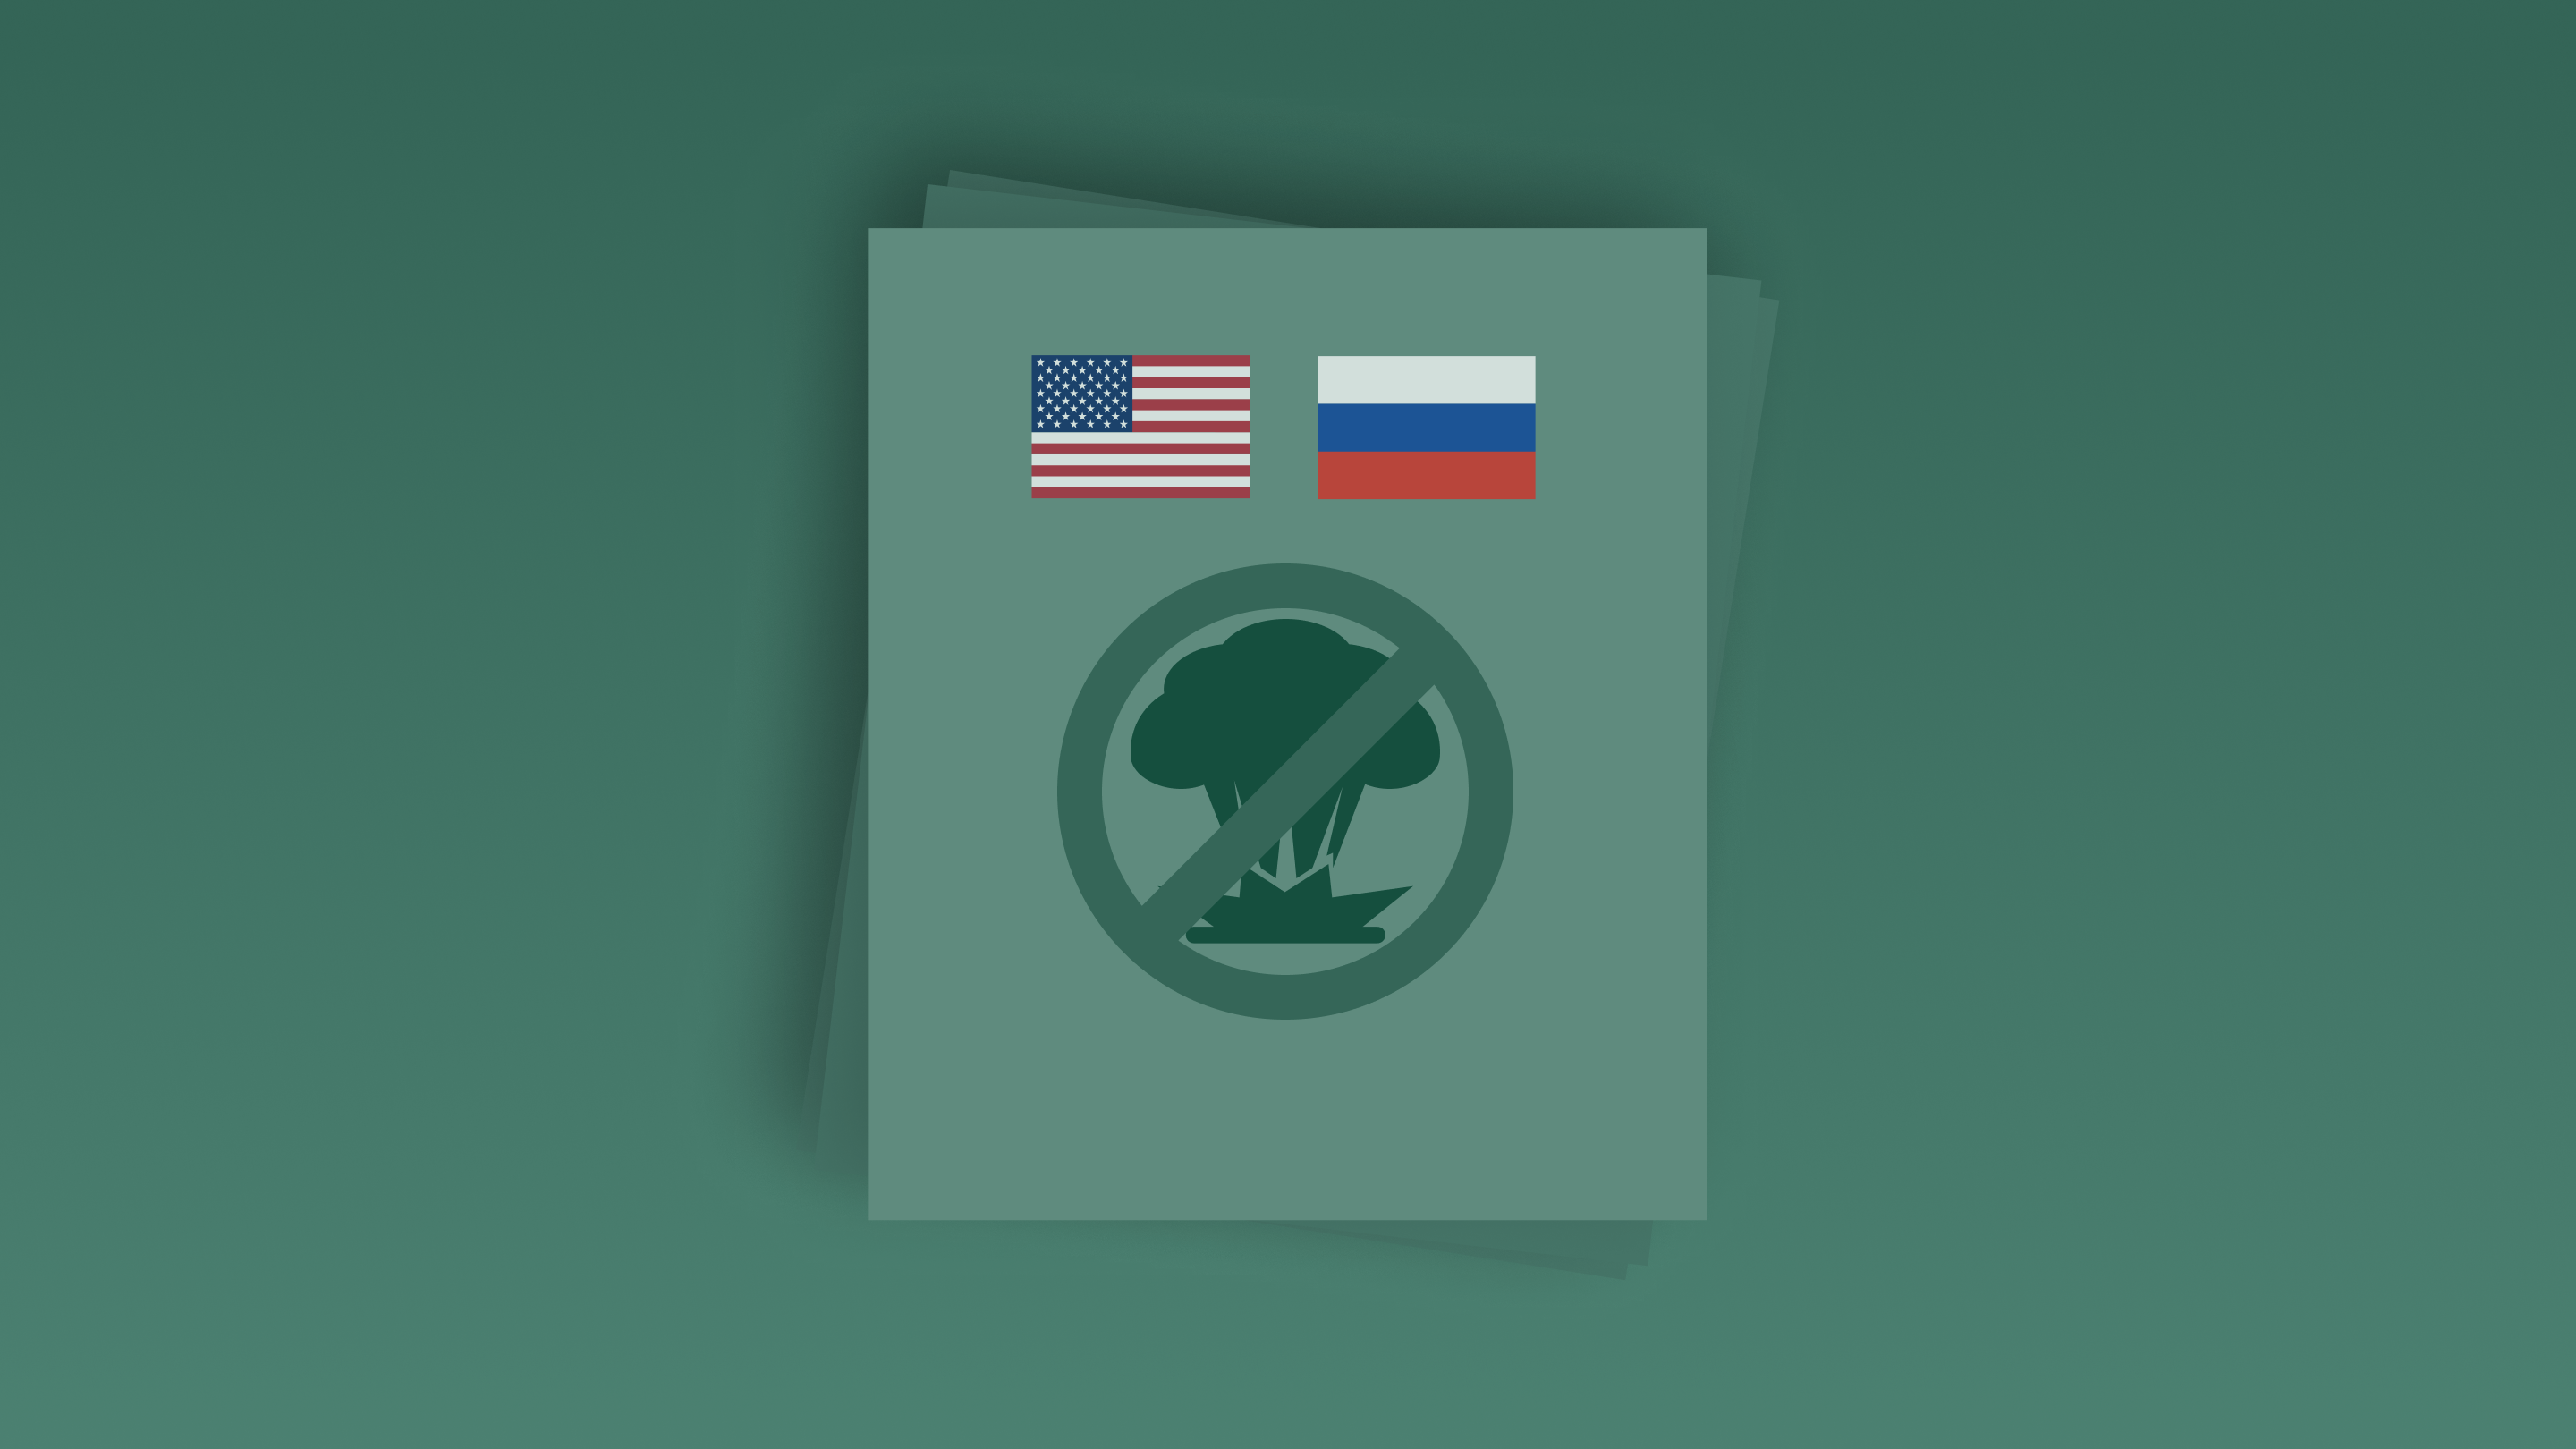 Проект договора о гарантиях безопасности между Россией и США